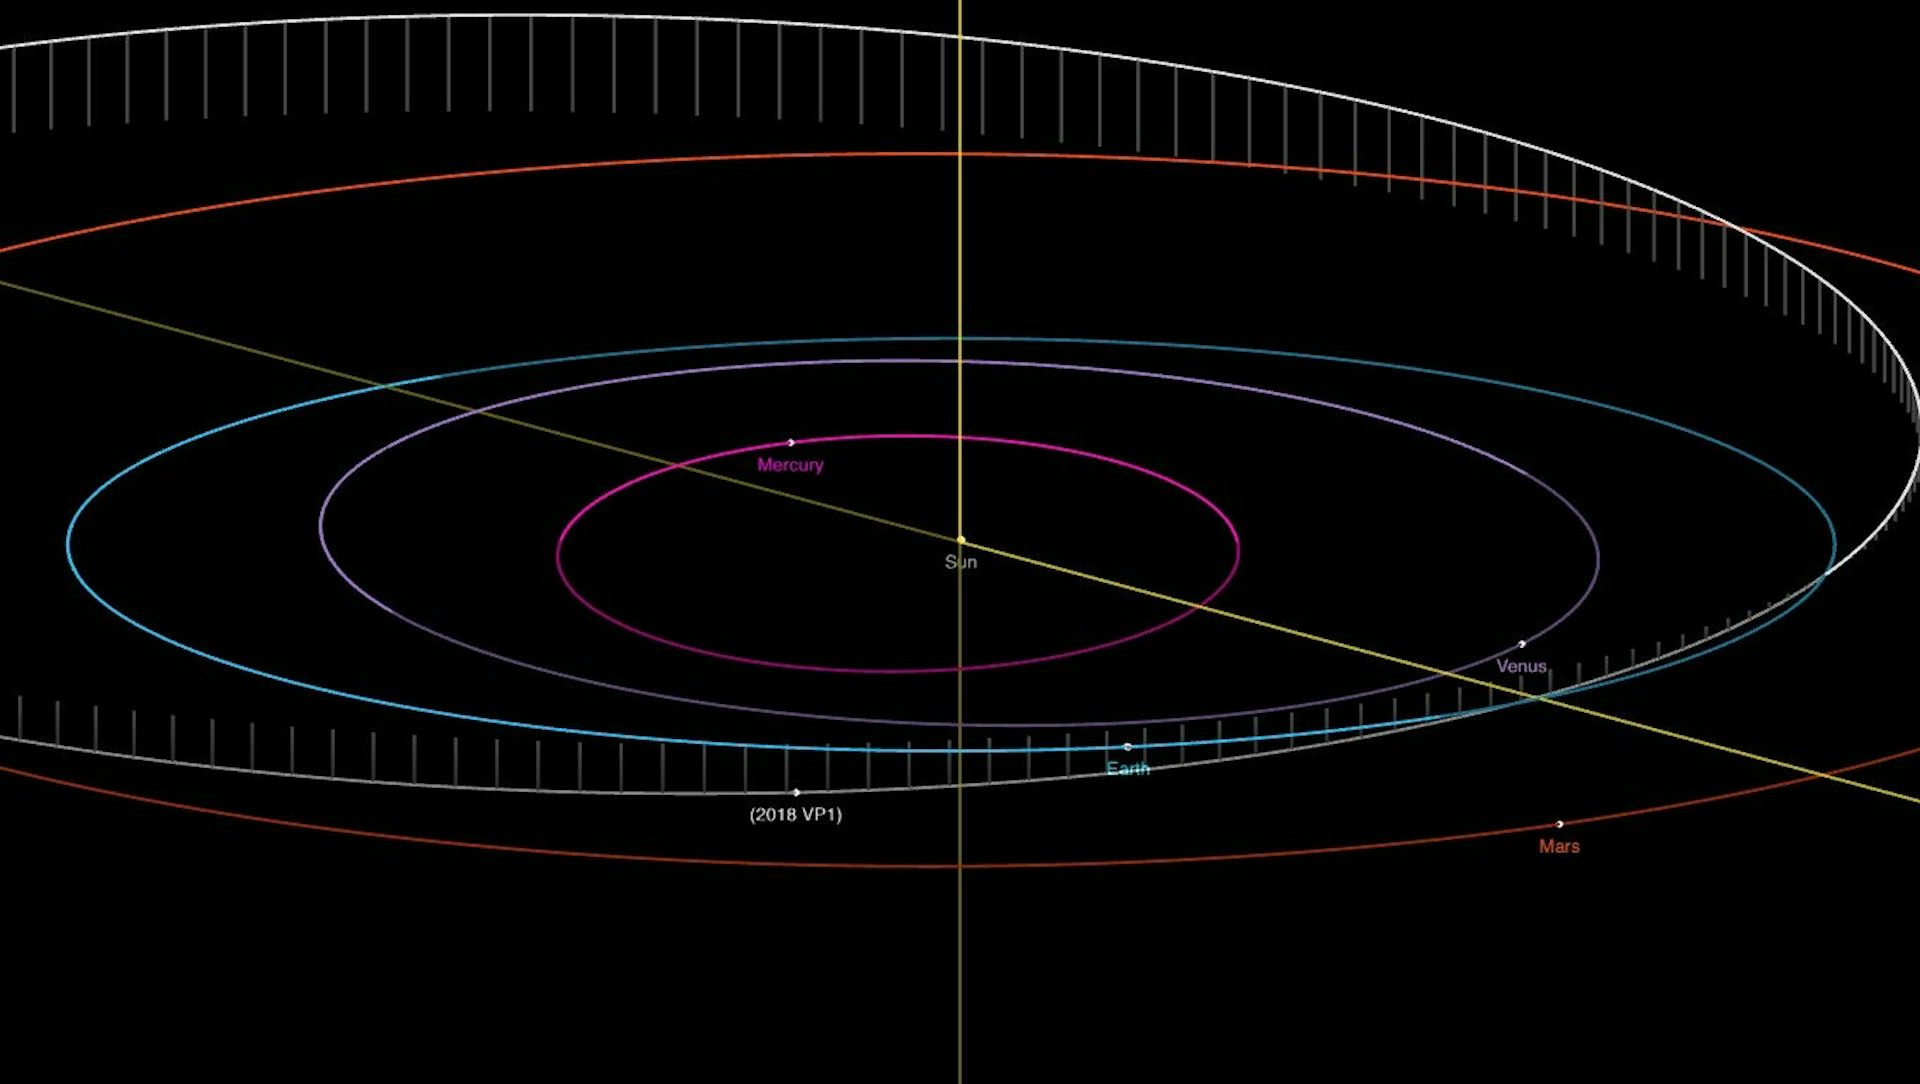  小惑星2018 VP₁と地球の軌道の交差を示す図。